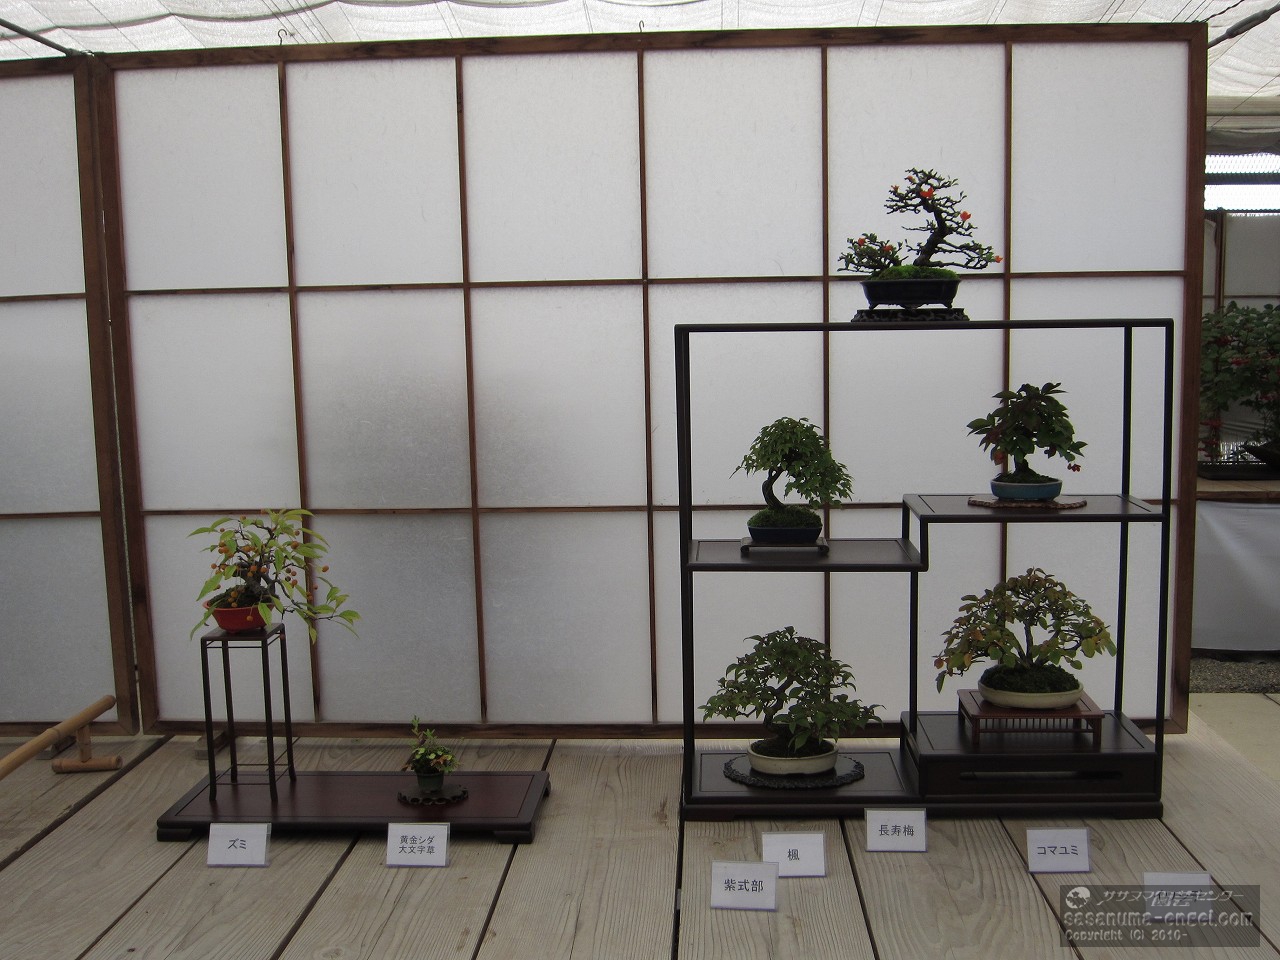 （左から）ズミ、黄金シダ、大文字草　（上左から）長寿梅、楓、コマユミ、紫式部、イワシデ